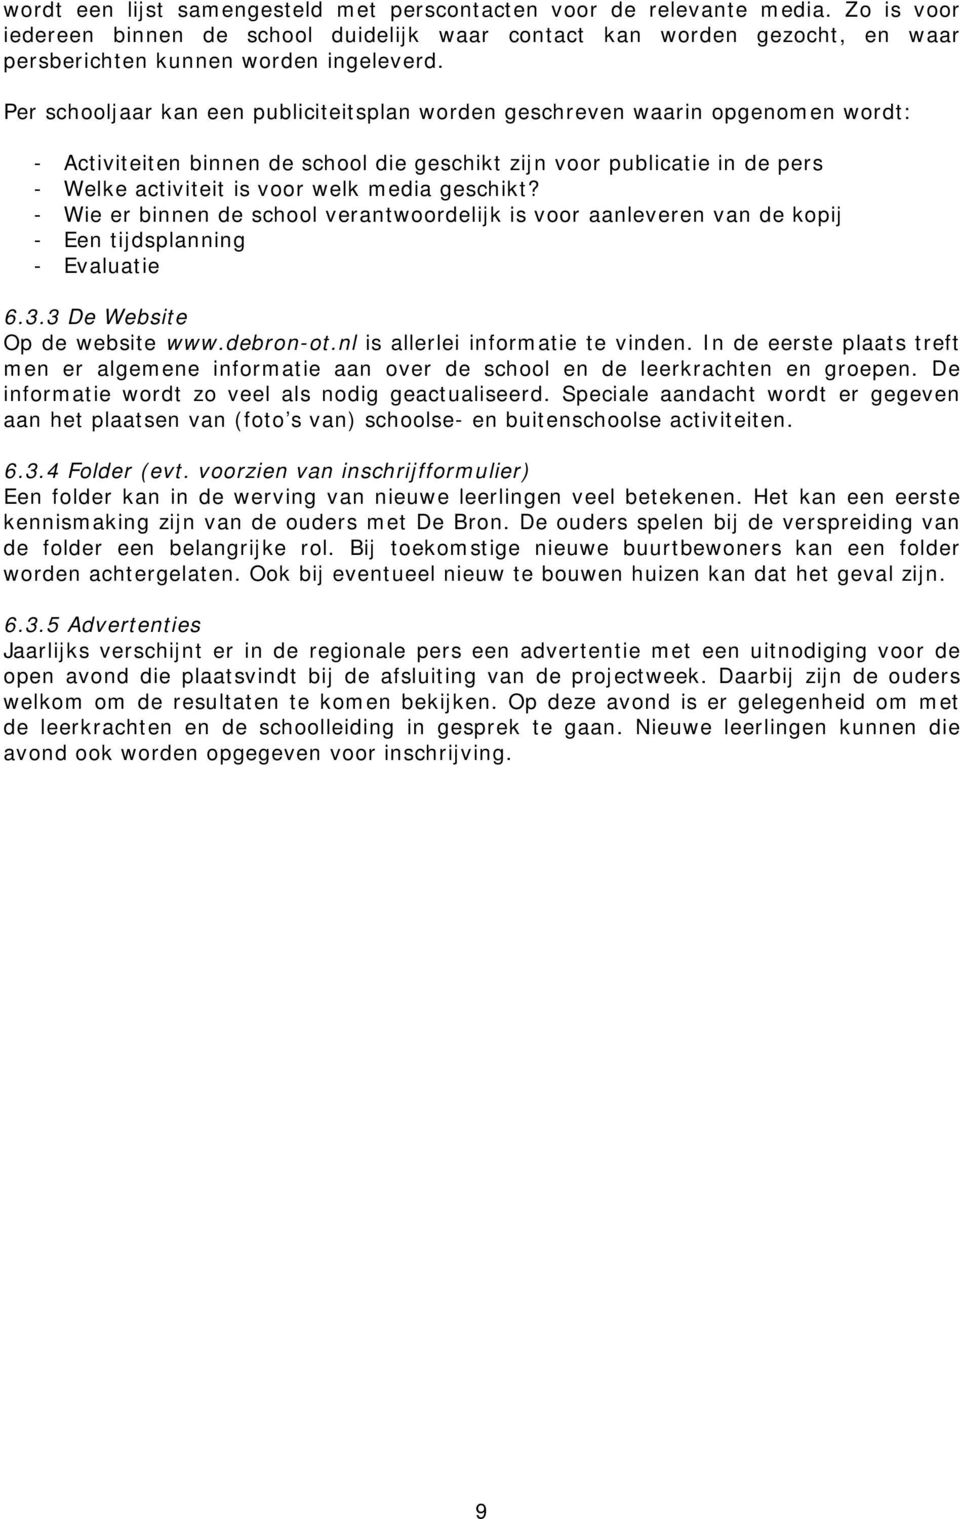 geschikt? - Wie er binnen de school verantwoordelijk is voor aanleveren van de kopij - Een tijdsplanning - Evaluatie 6.3.3 De Website Op de website www.debron-ot.nl is allerlei informatie te vinden.